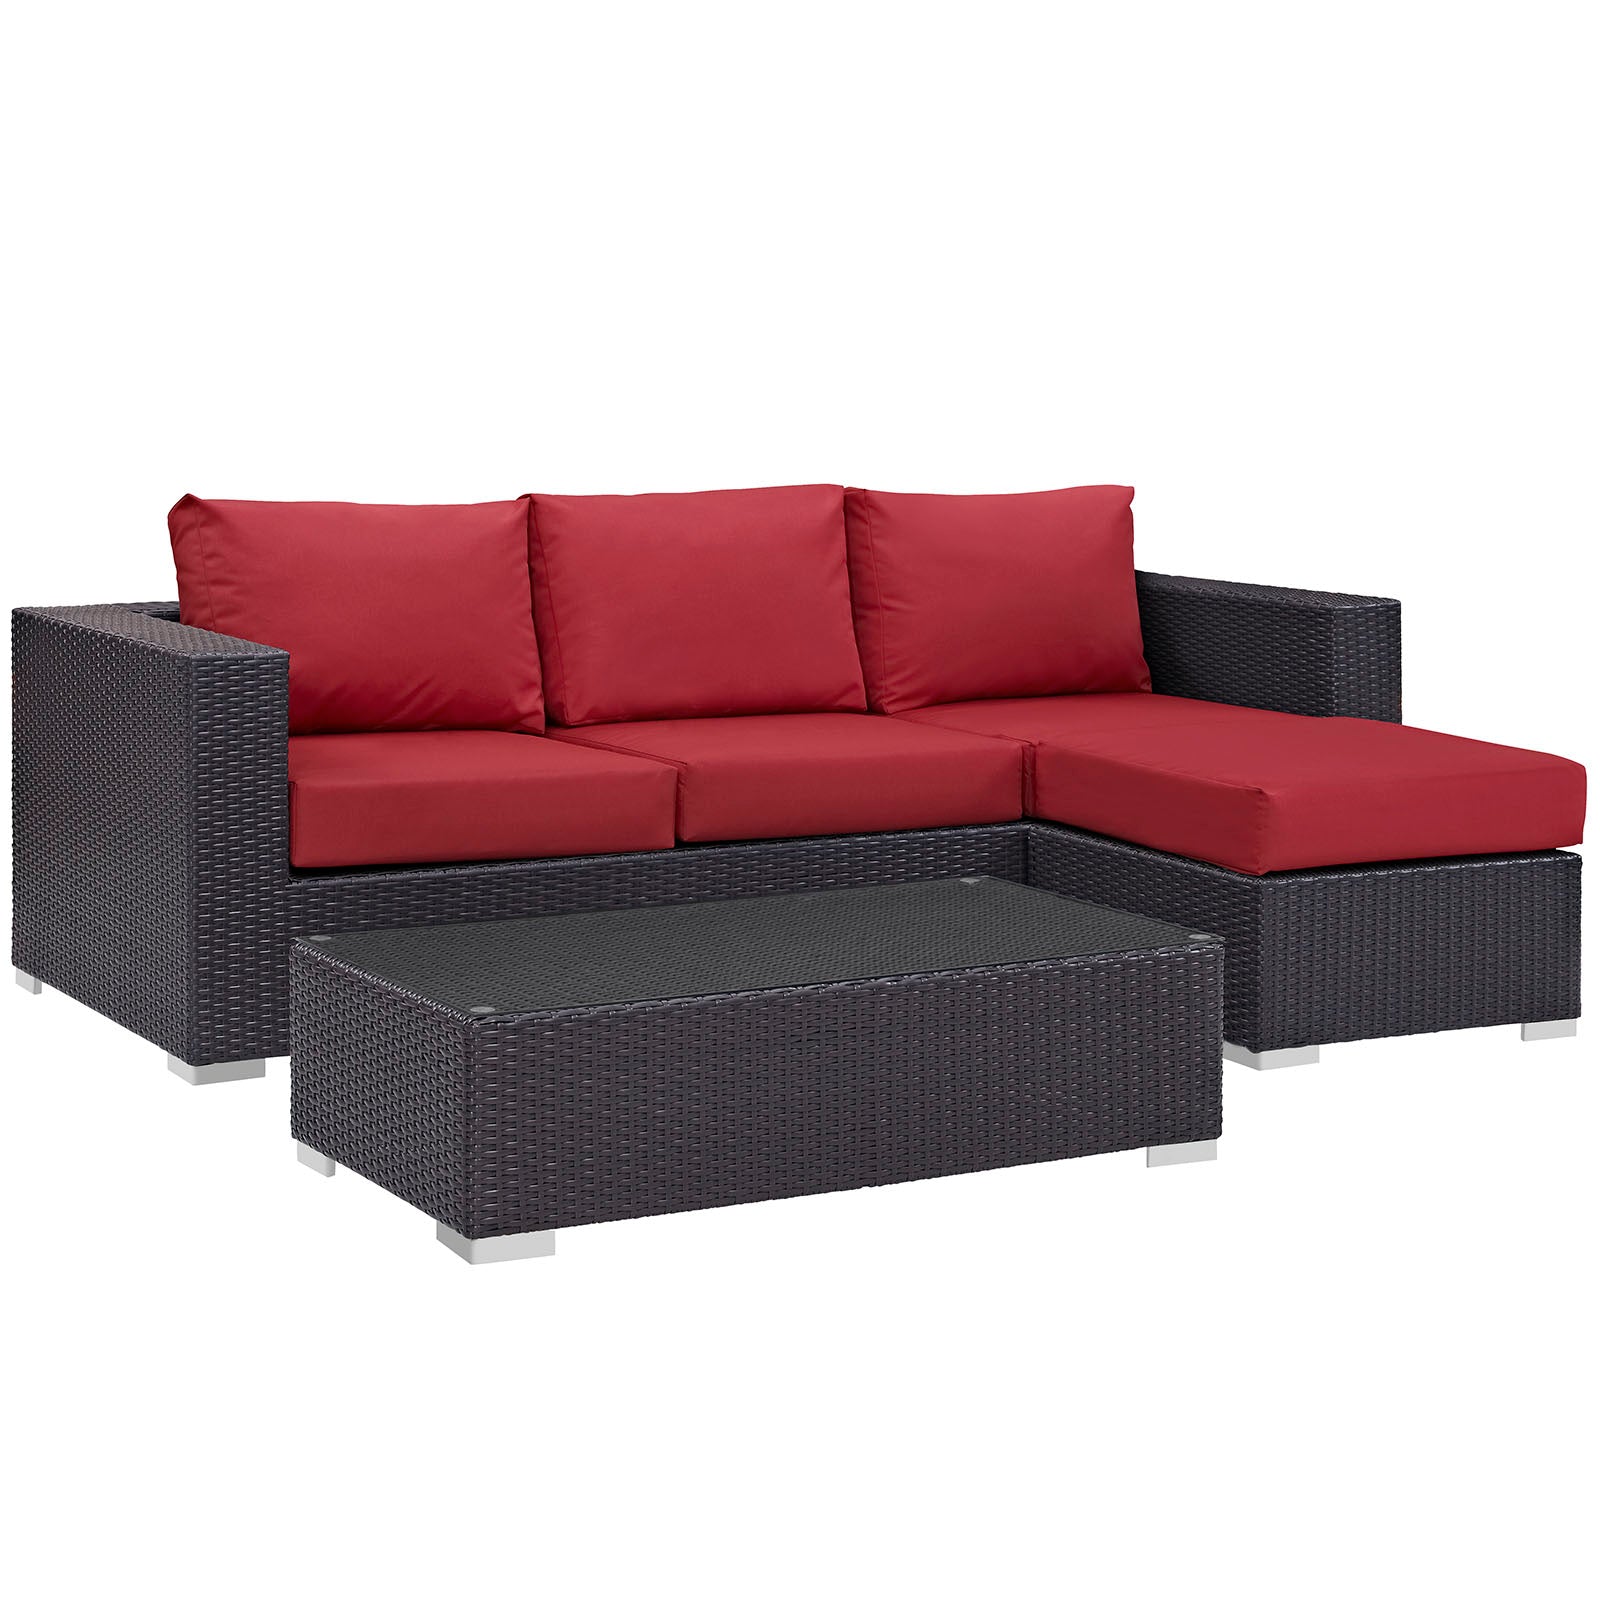 Modway Outdoor Conversation Sets - Convene 3 Piece Outdoor Patio Sofa Set Espresso Red